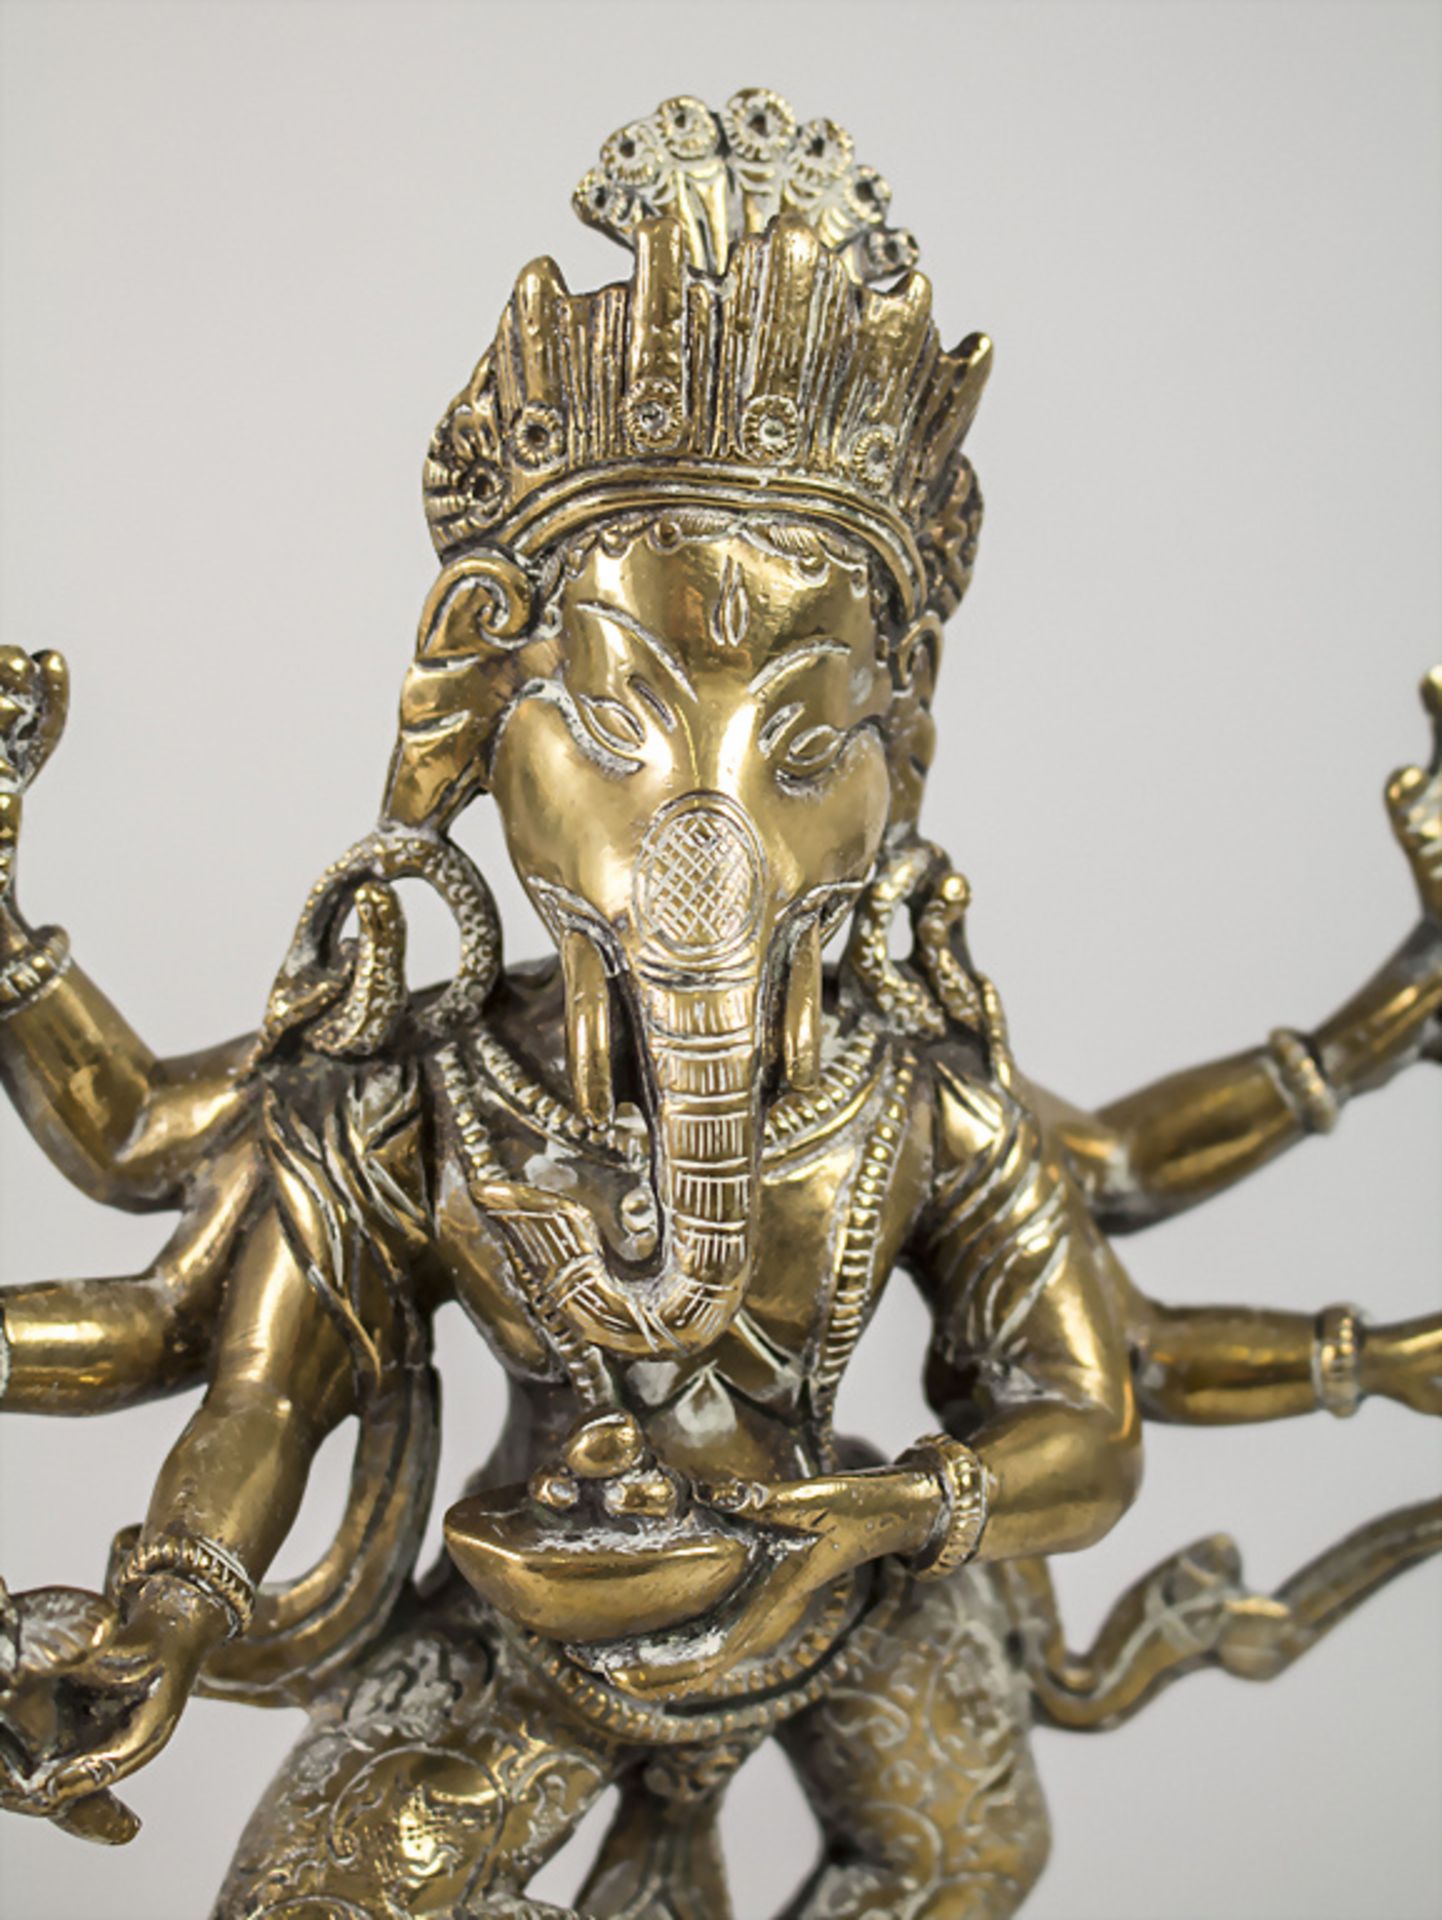 Ganesha auf Ratte, Indien, 18./19. Jh. - Bild 6 aus 6